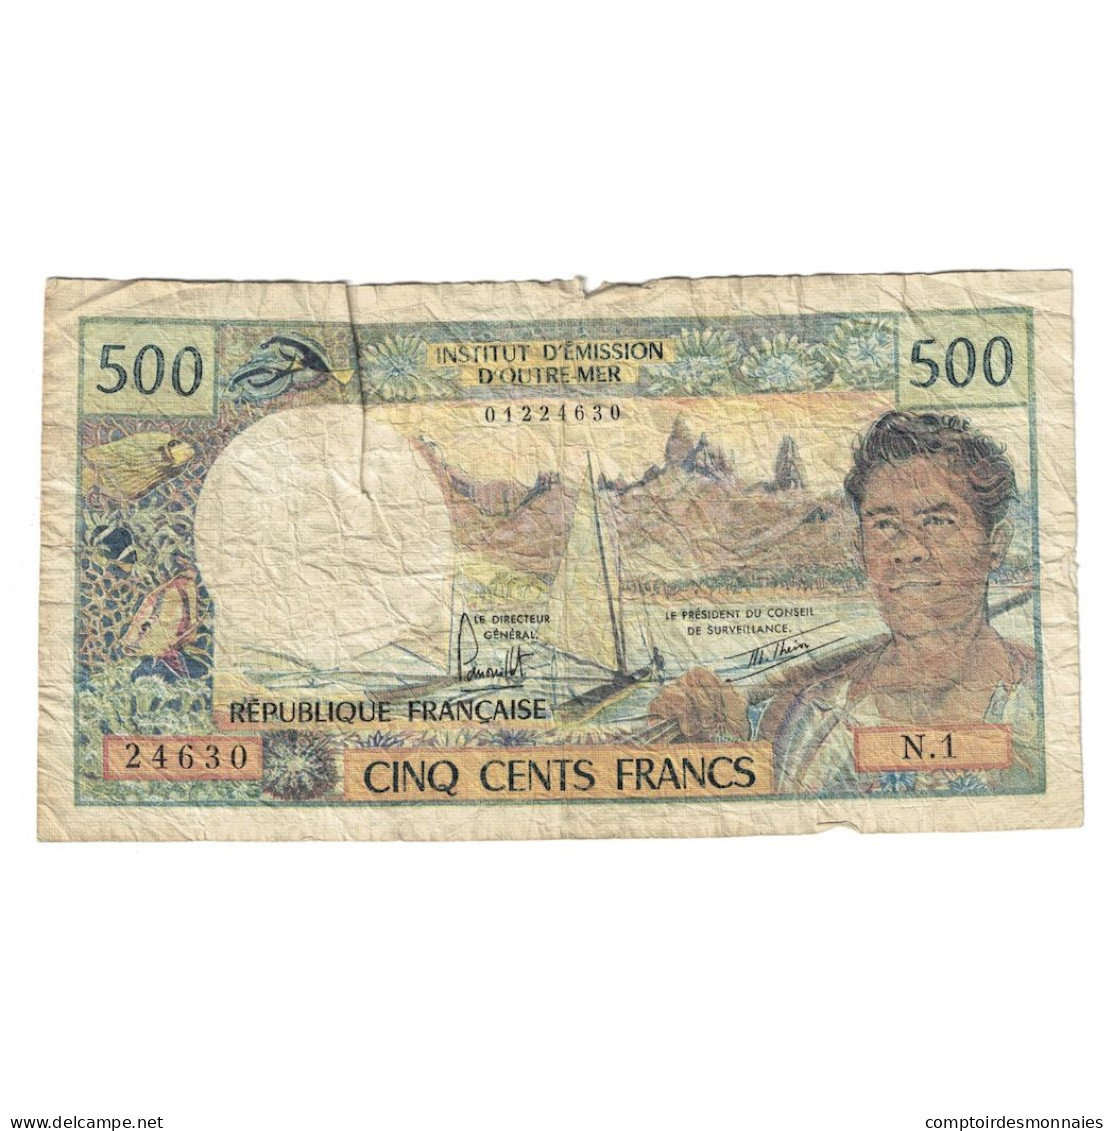 Billet, Tahiti, 500 Francs, 1985, KM:25d, TB - Papeete (Frans-Polynesië 1914-1985)